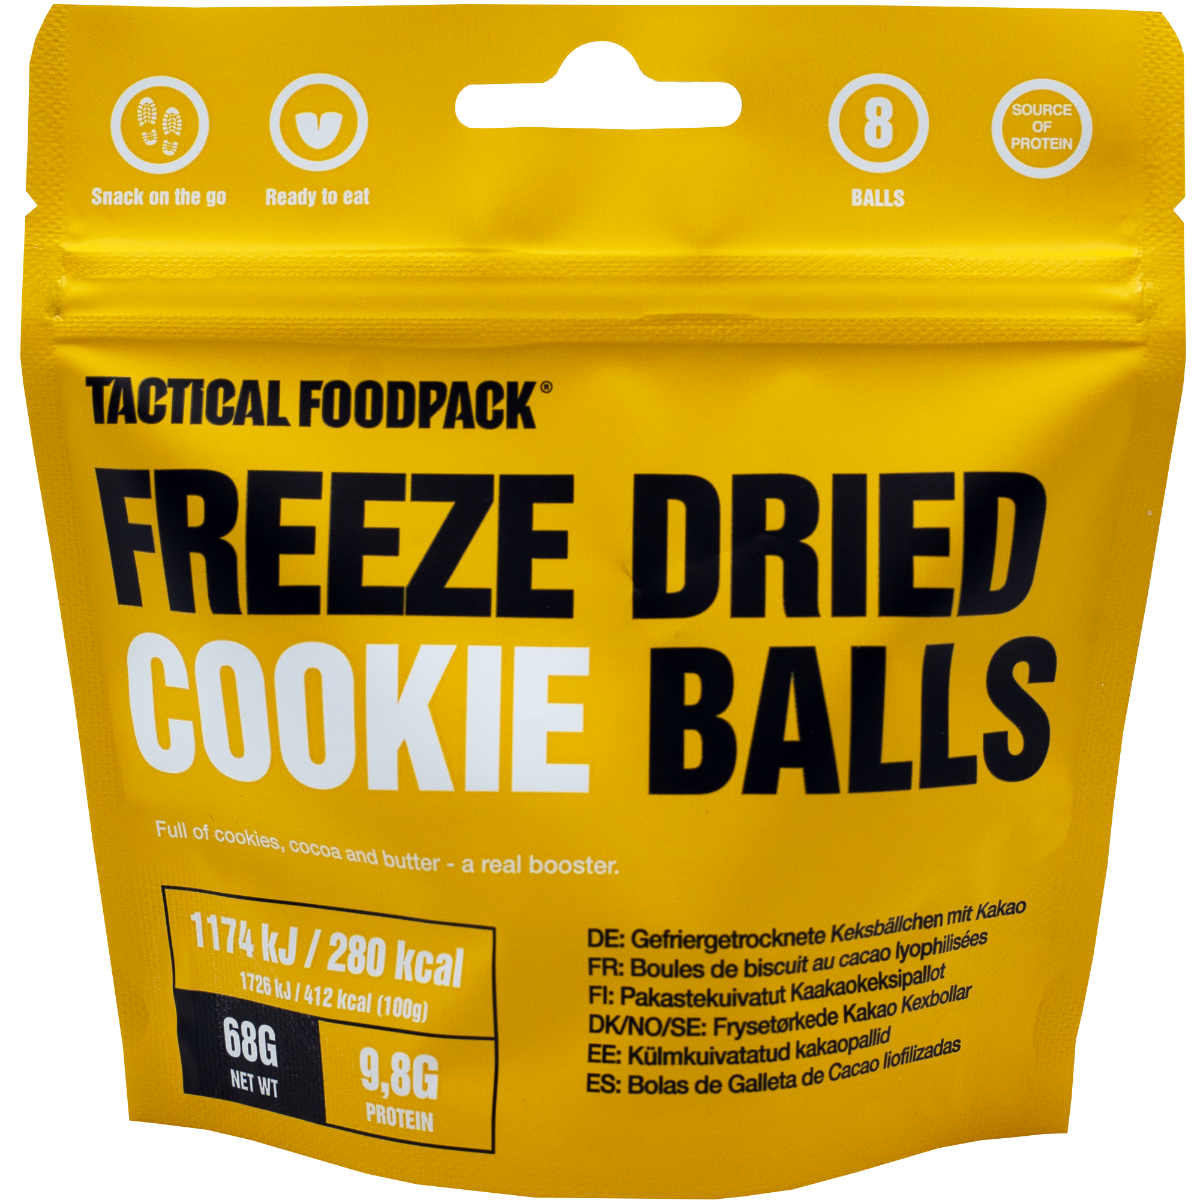 Iščete okusne in priročne prigrizke za aktivnosti na prostem? Freeze Dried Cookie Balls 68g Tactical Foodpack je vrhunska liofilizirana hrana, ki je enostavna za pripravo, hranljiva in izjemno okusna. Uživajte v sladkih piškotih kjerkoli in kadarkoli - idealno za pohodnike, kampiste, športnike in družinske izlete. Naročite svoj paket danes!